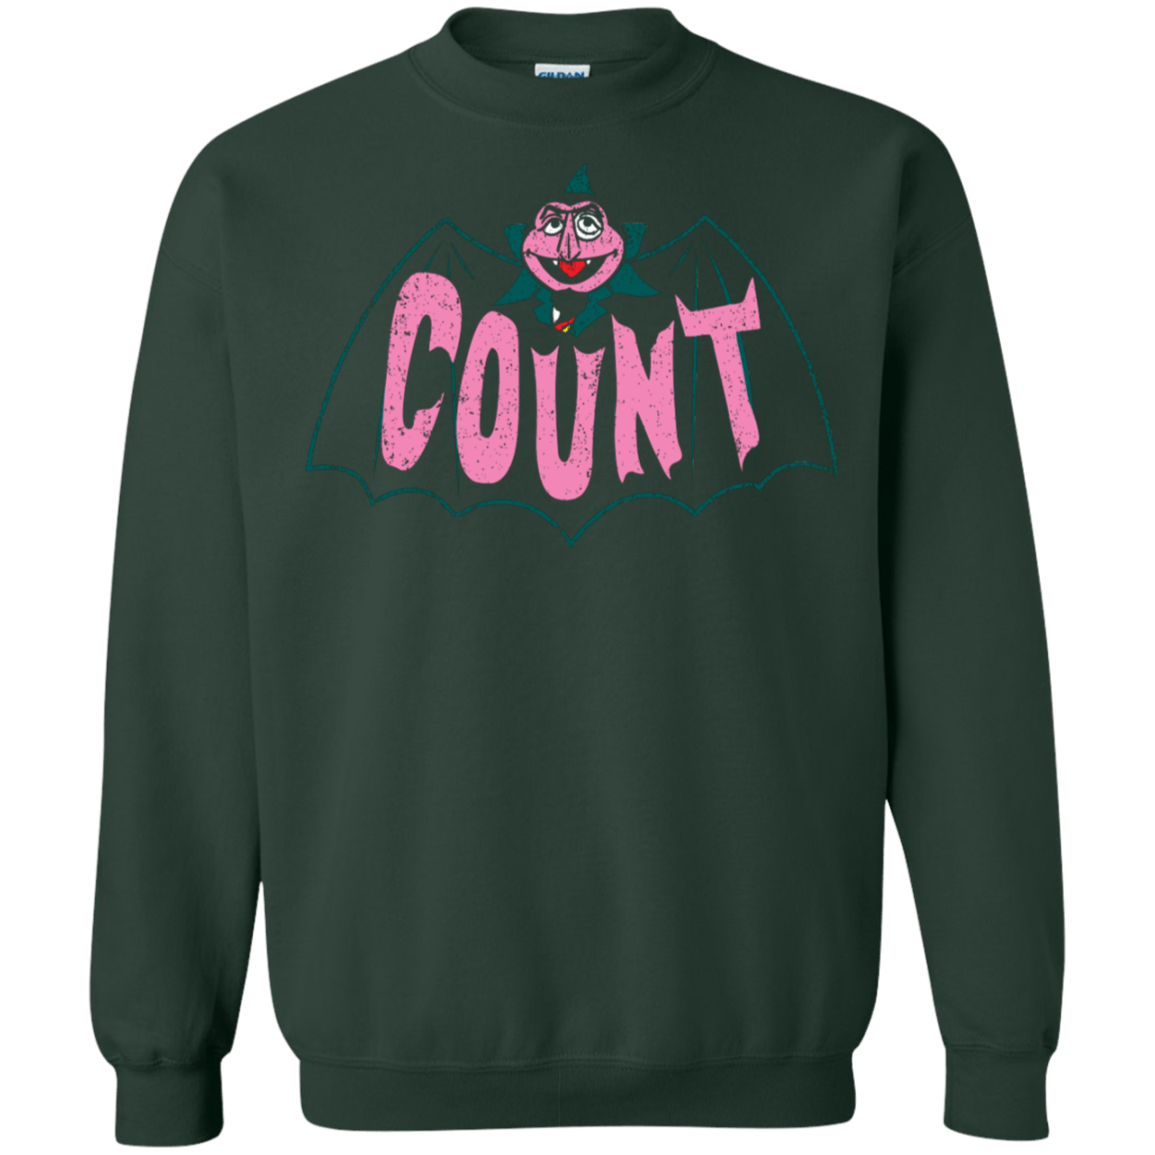 Sweatshirts Forest Green / S Count Crewneck Sweatshirt